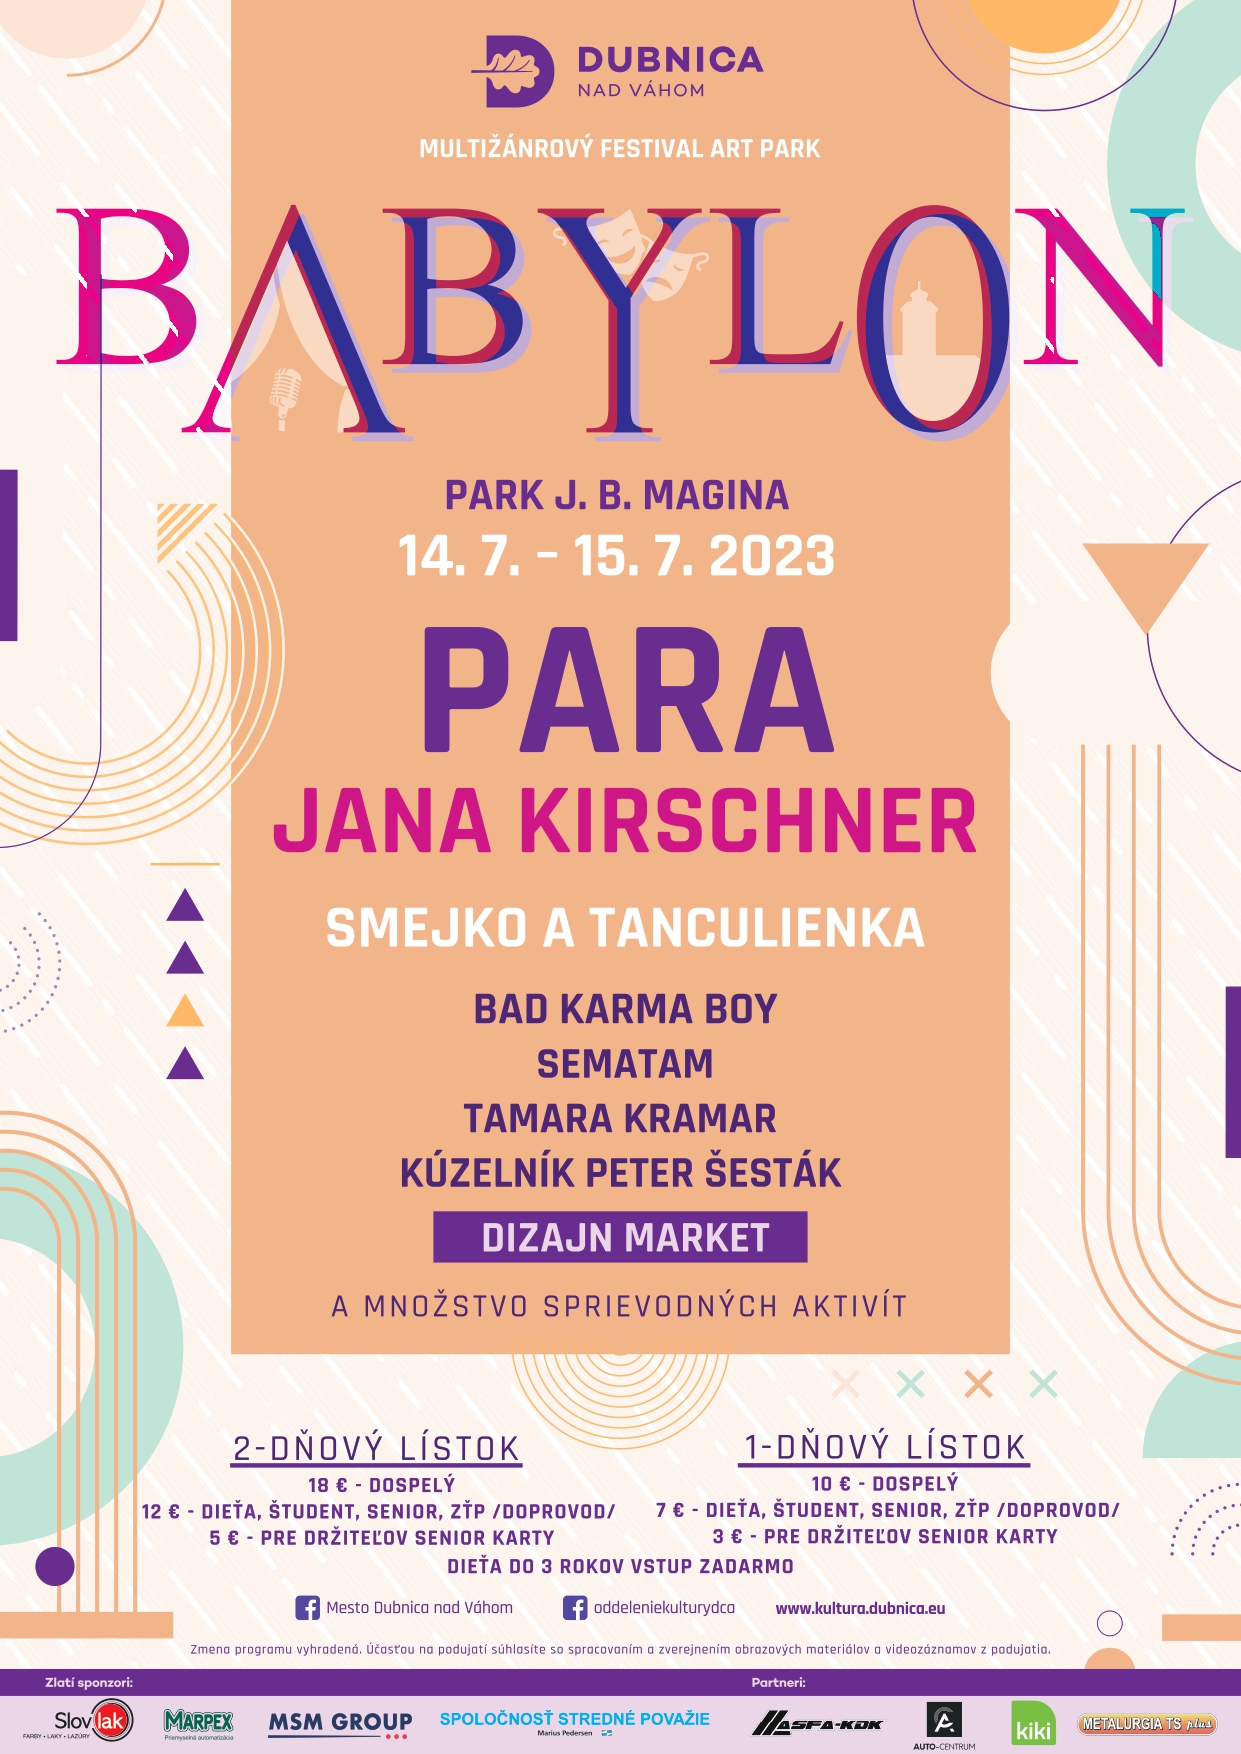 Multinrov festival BABYLON 2023 Dubnica nad Vhom 